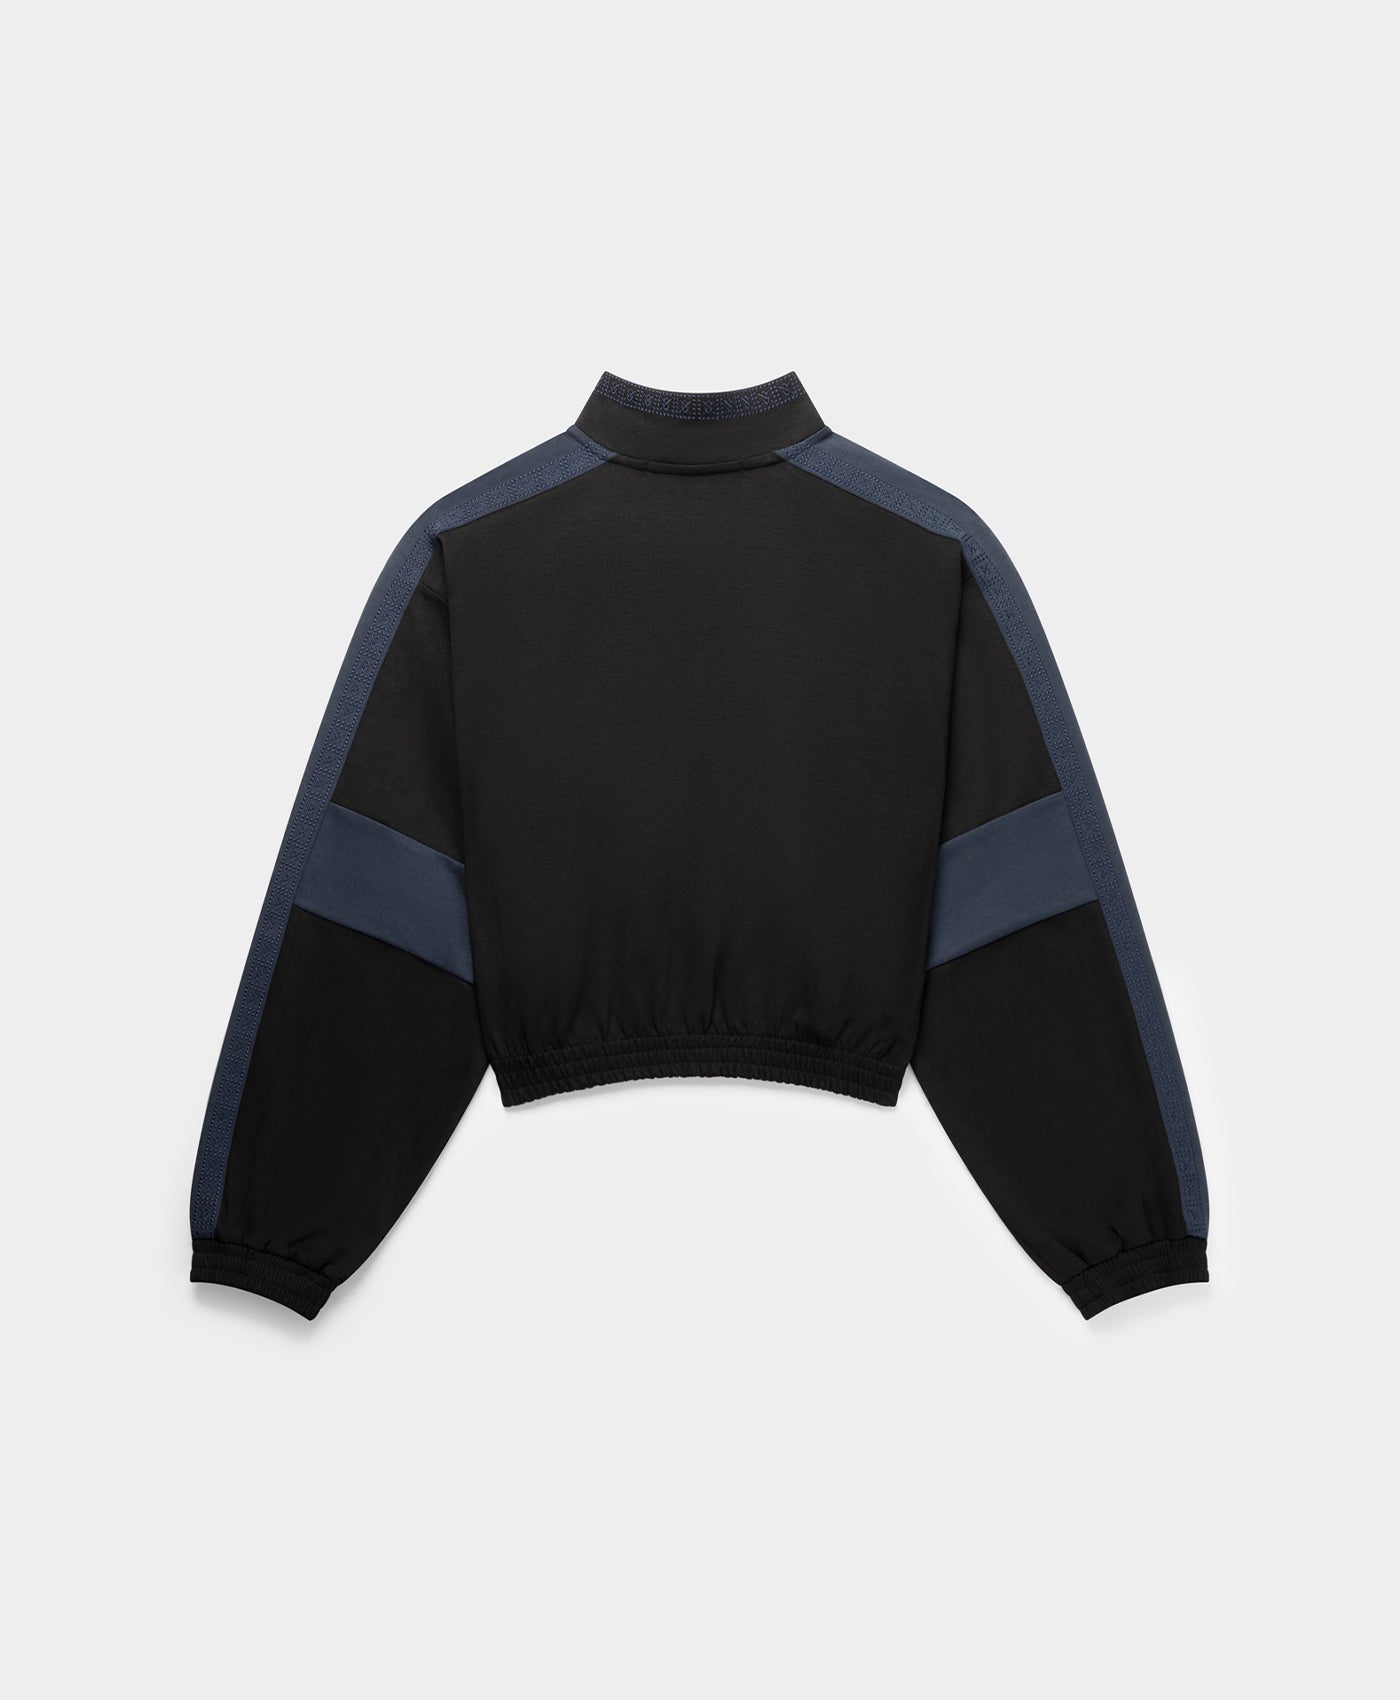 DP - Black Blue Pasha Sweater - Packshot - Rear